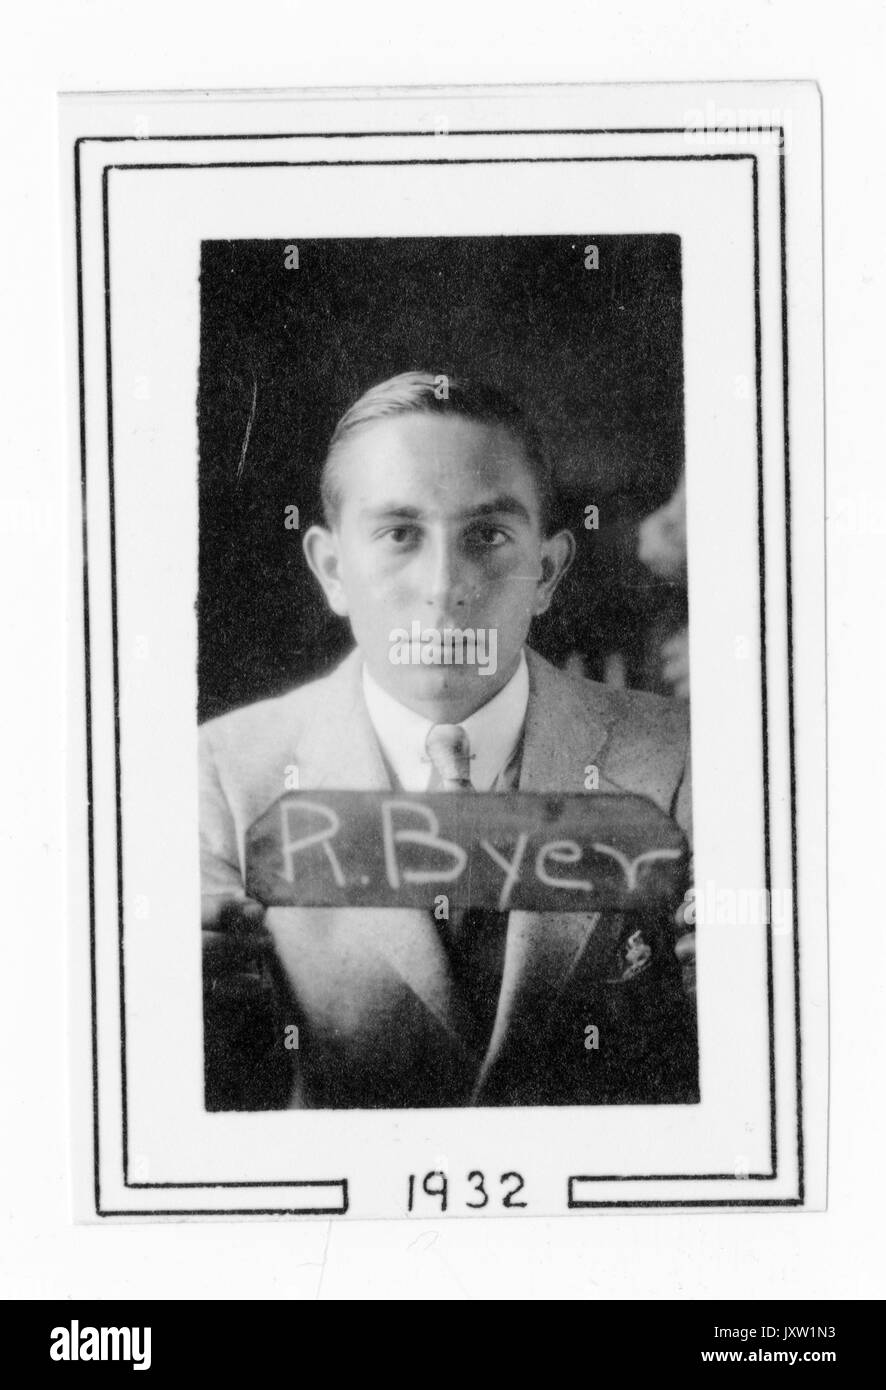 Richard Byer, portrait Fotografie, Brustkorb, Gesicht, c 25 Jahre, 1932. Stockfoto